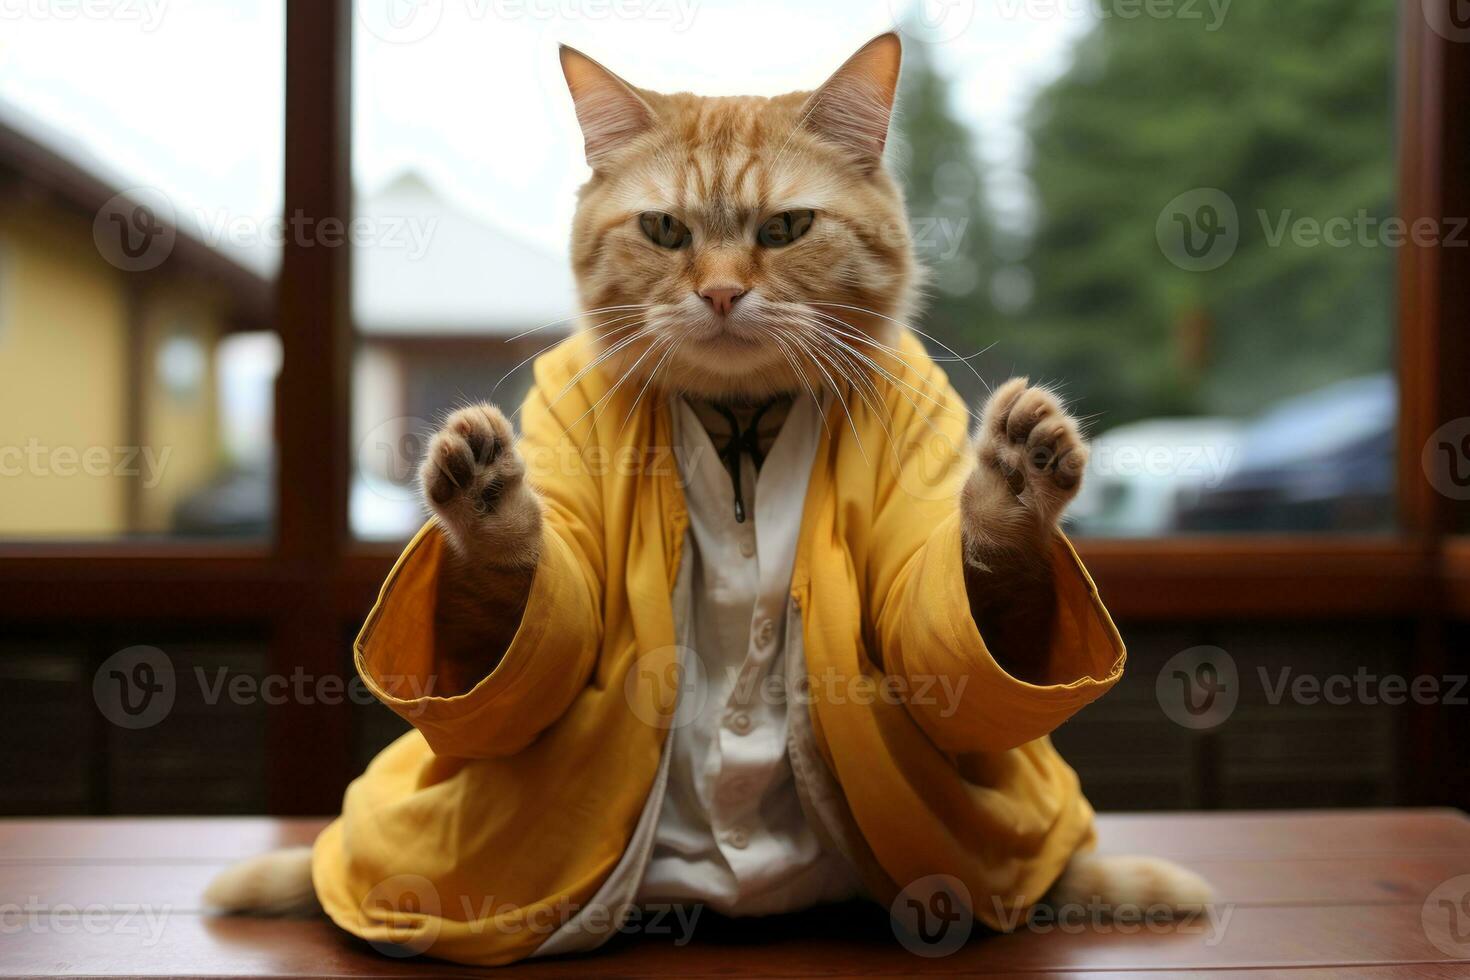 Hilário imagens do gatos tentando ioga poses, exibindo seus flexibilidade e não intencional comédia. generativo ai foto